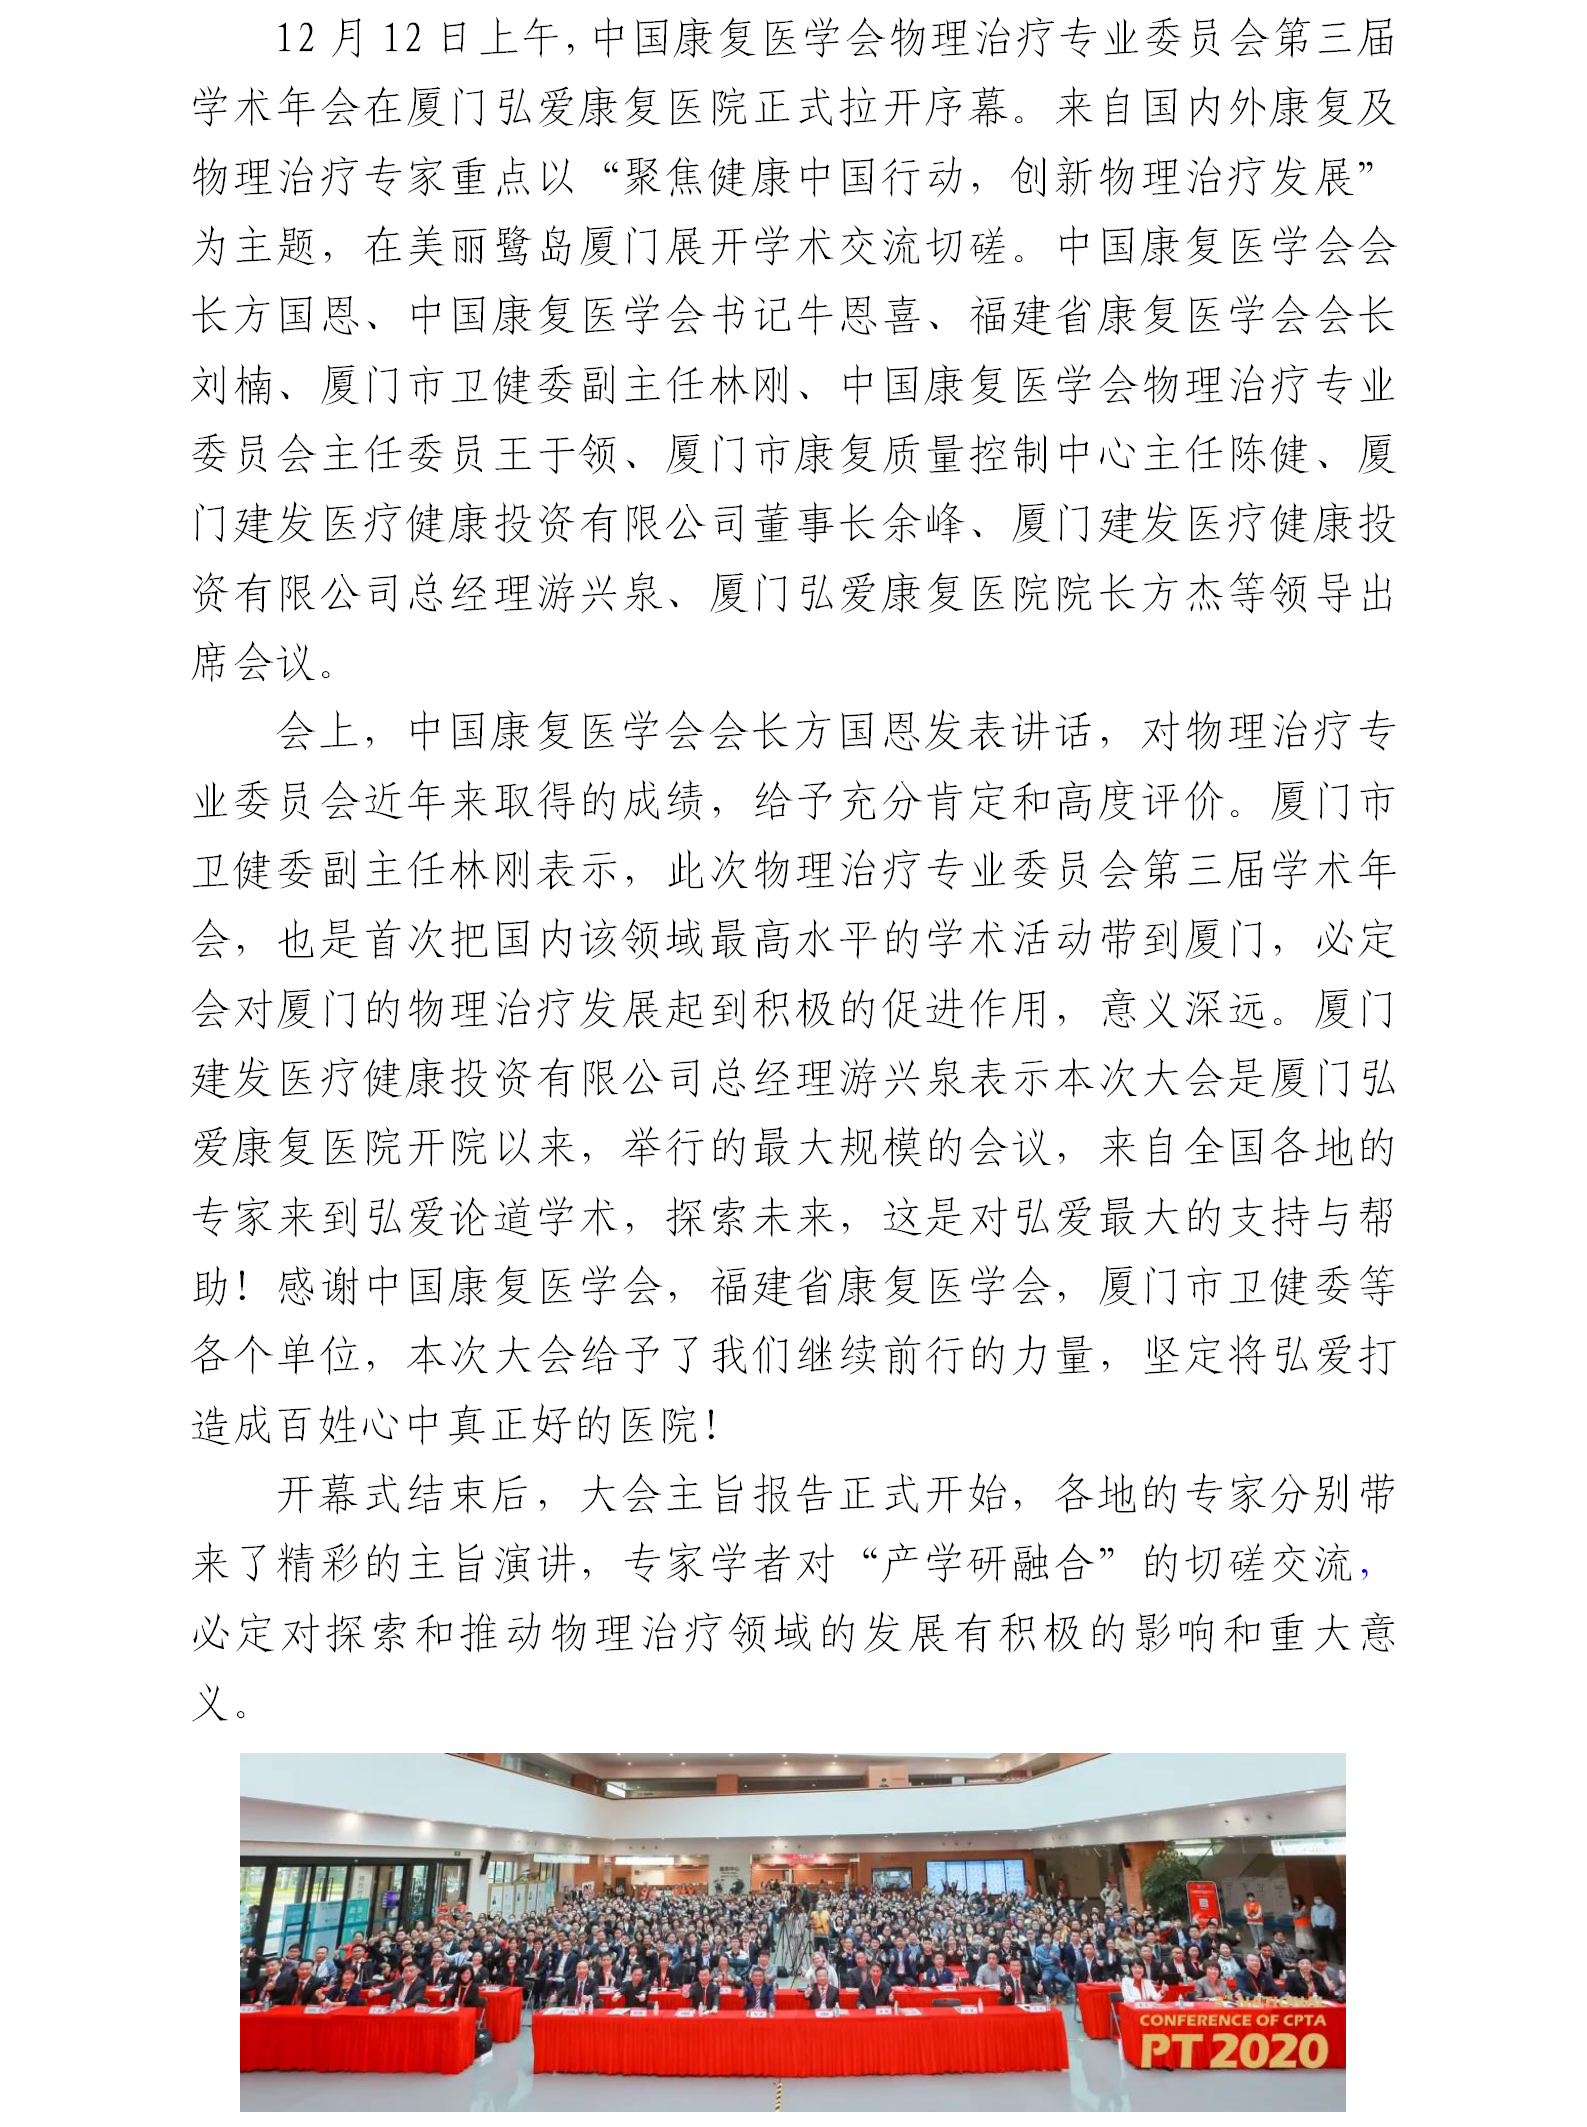 【上内、外网】中国康复医学会物理治疗专业委员会第三届.png